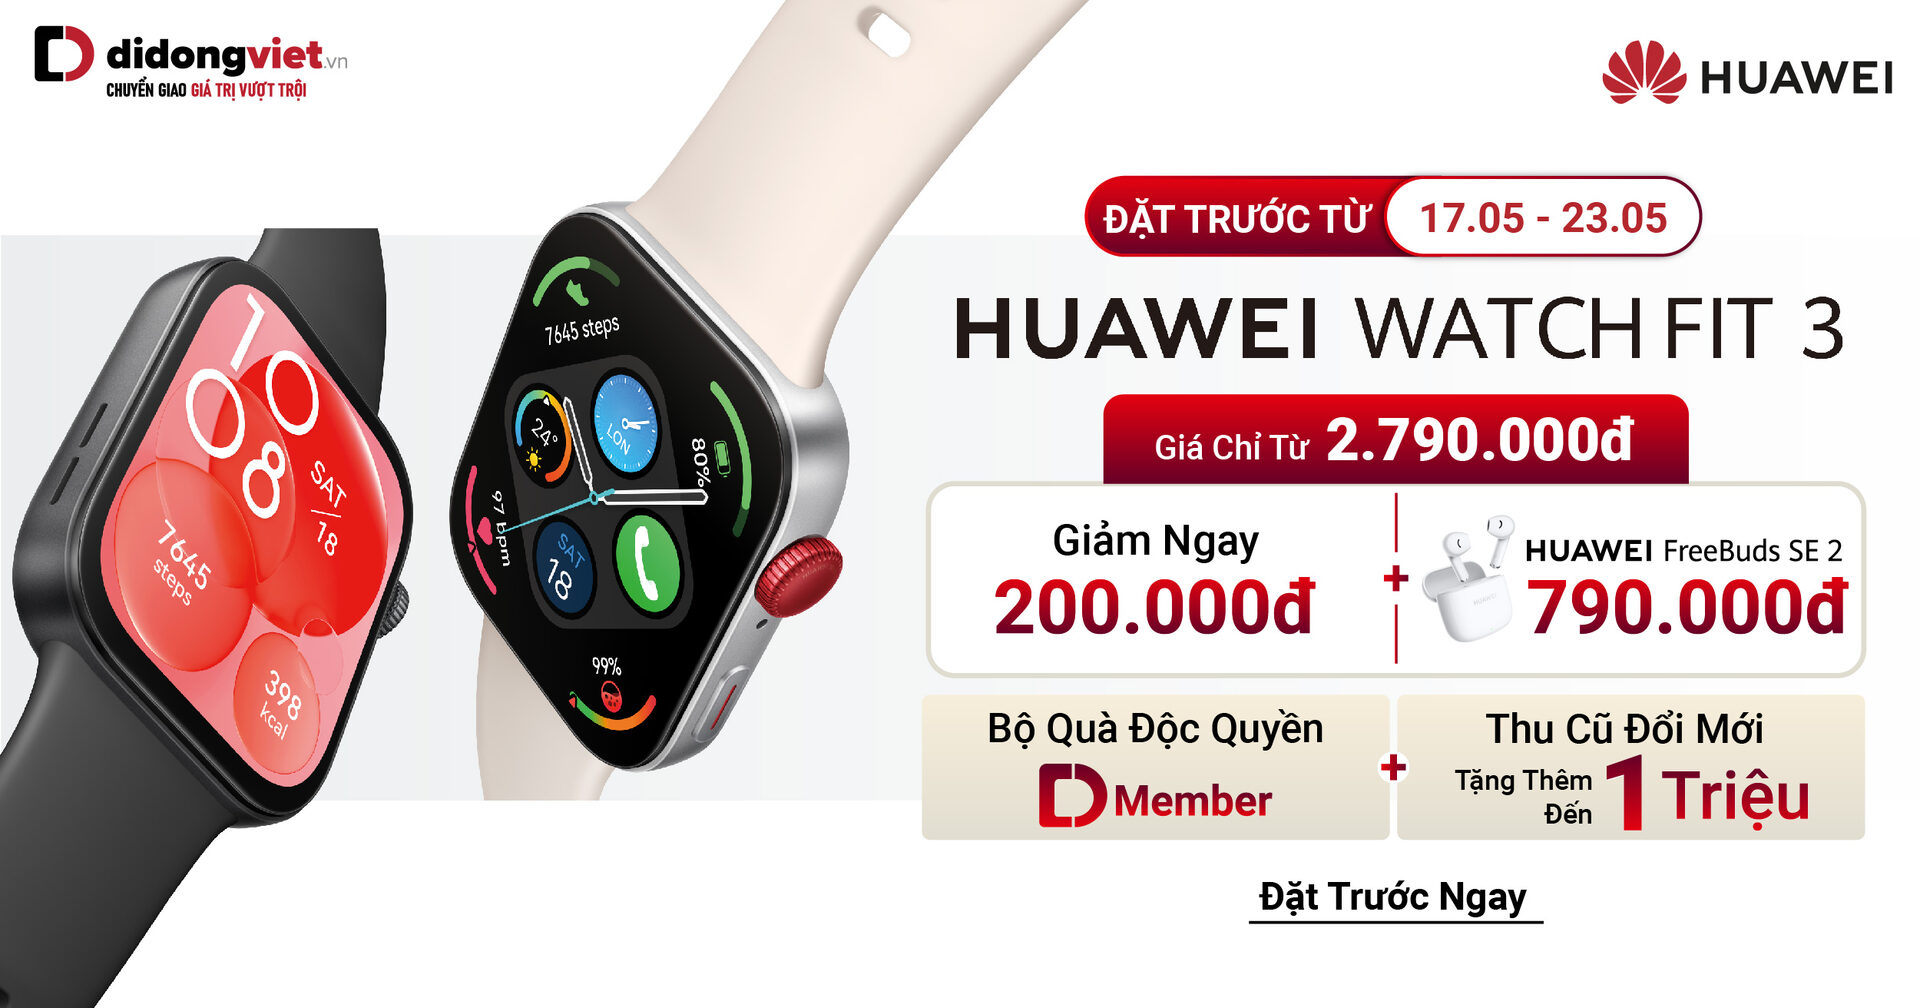 Đặt trước Huawei Watch Fit 3: Giá chỉ từ 2.79 triệu. Tặng tai nghe Huawei FreeBuds SE 2 kèm voucher giảm thêm đến 200K. Trả góp 0%, trả trước 0đ